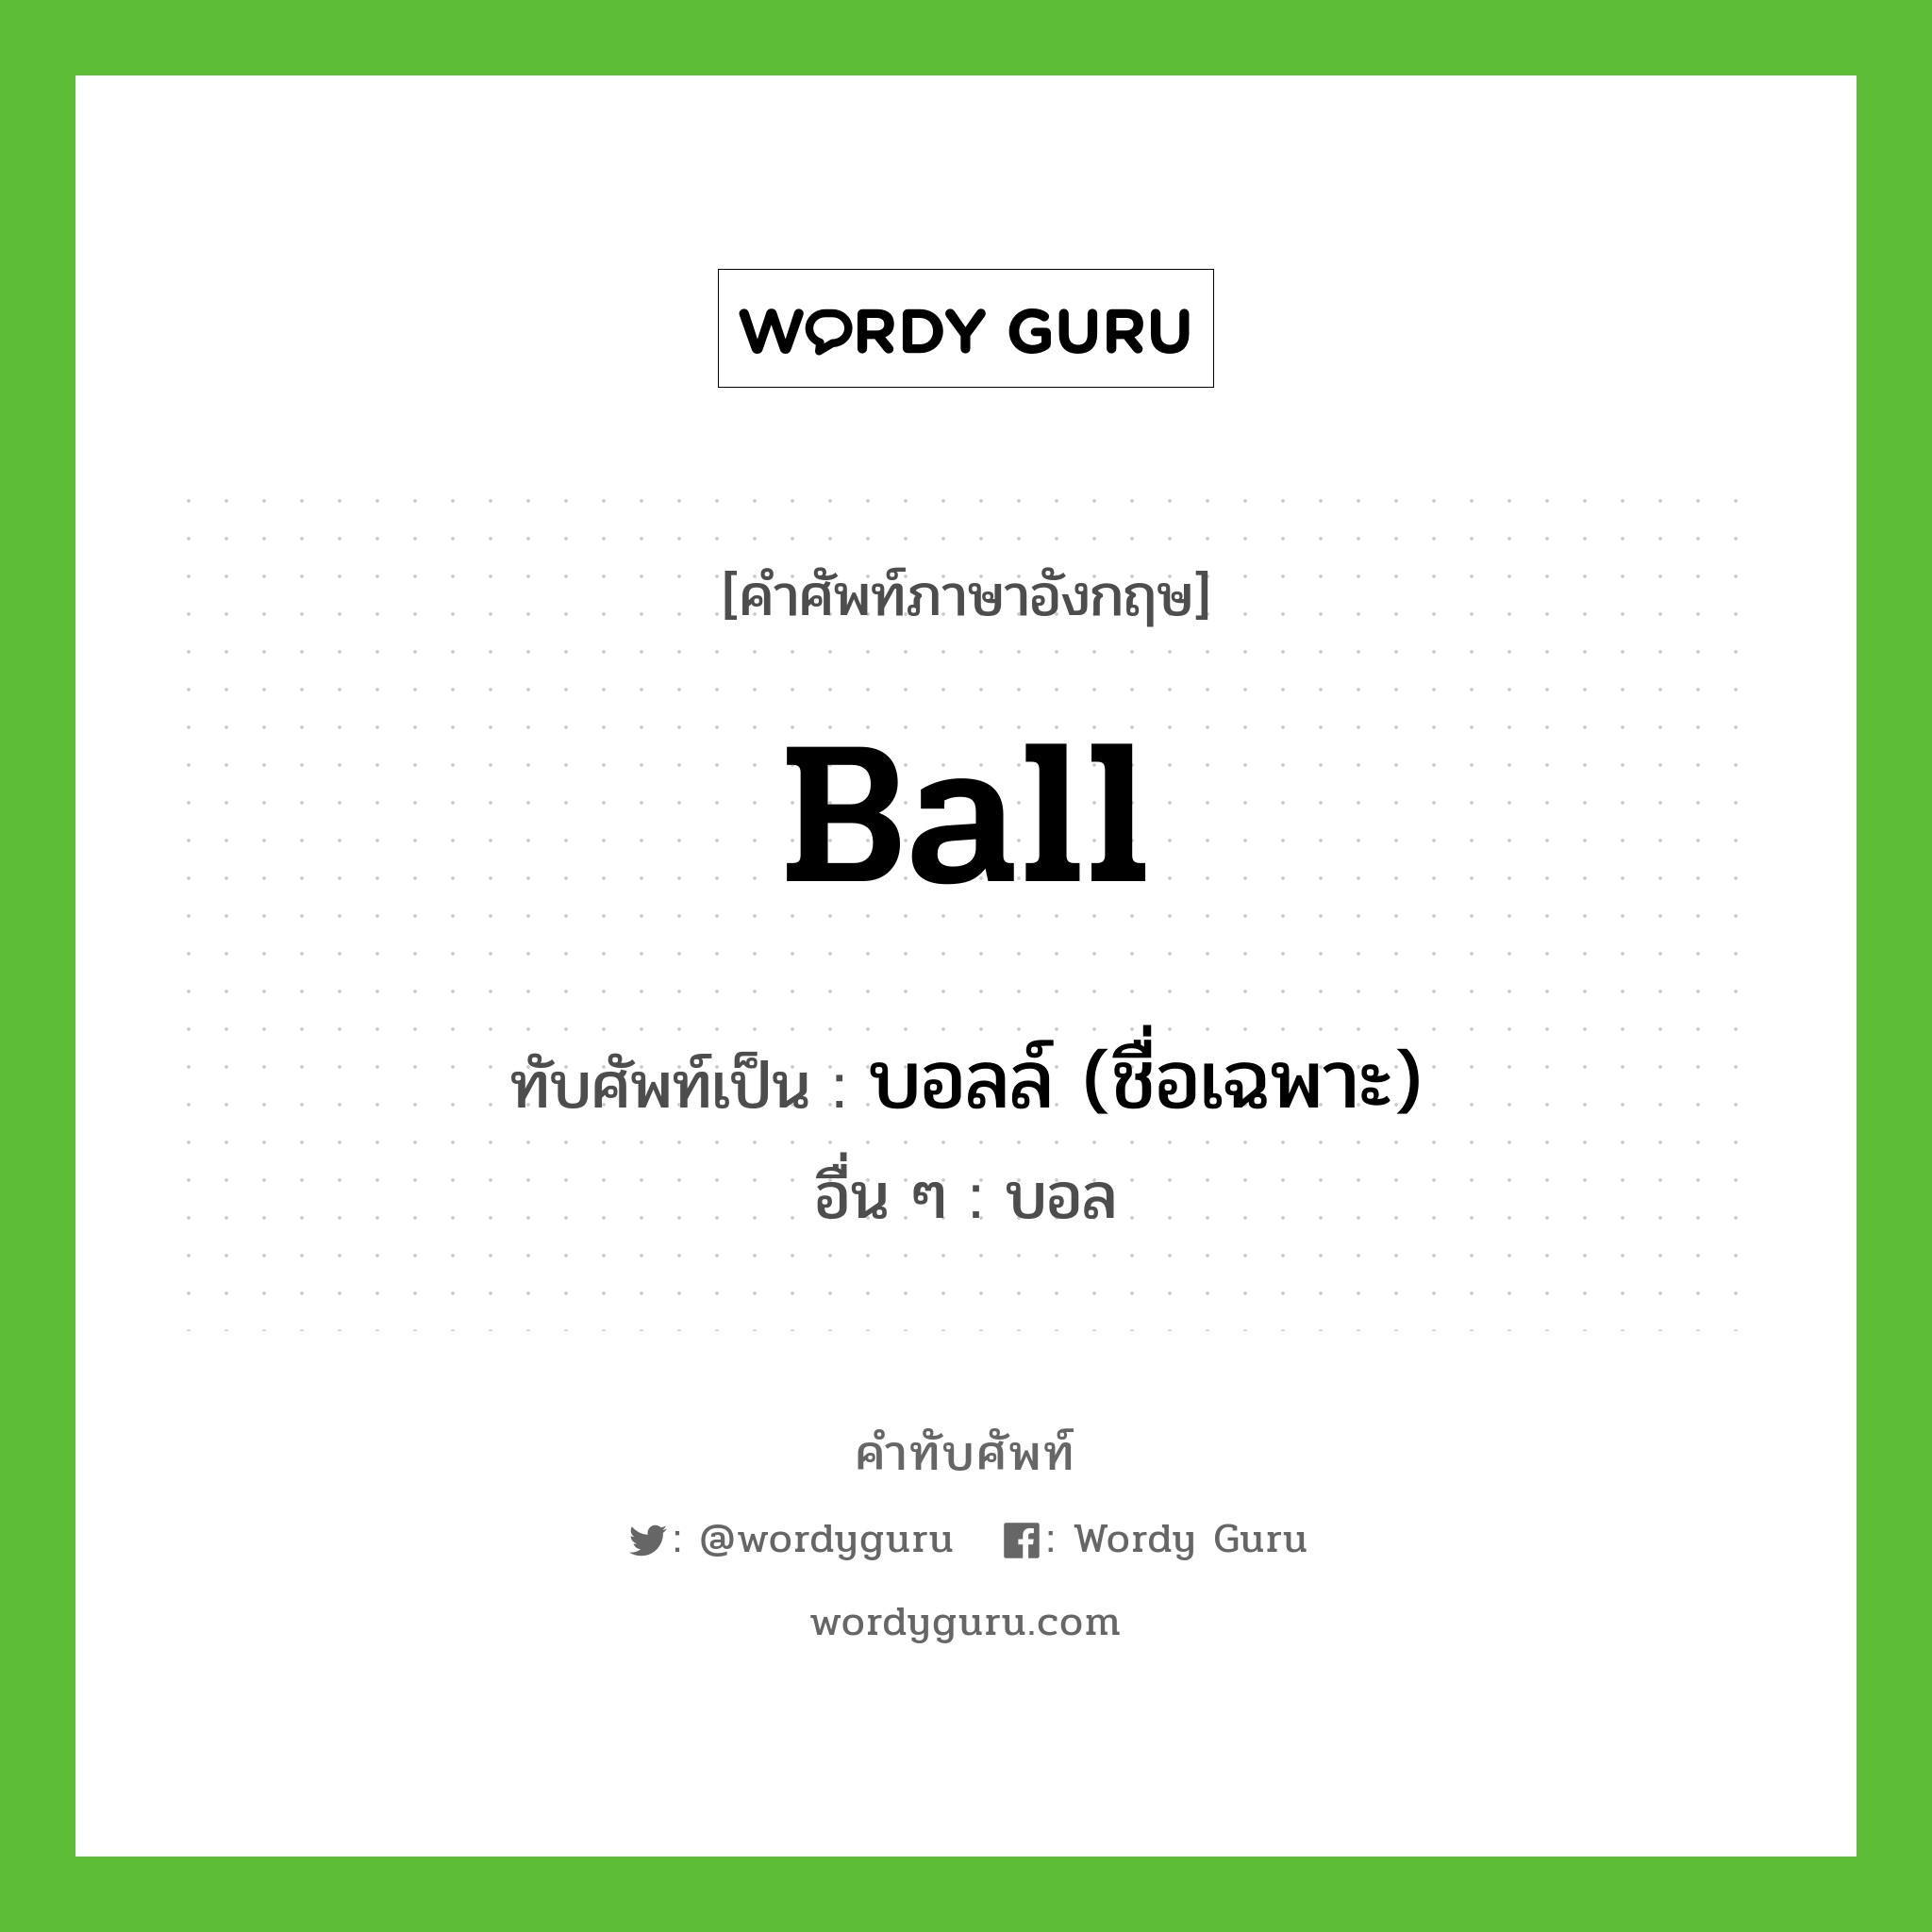 ball เขียนเป็นคำไทยว่าอะไร?, คำศัพท์ภาษาอังกฤษ Ball ทับศัพท์เป็น บอลล์ (ชื่อเฉพาะ) อื่น ๆ บอล